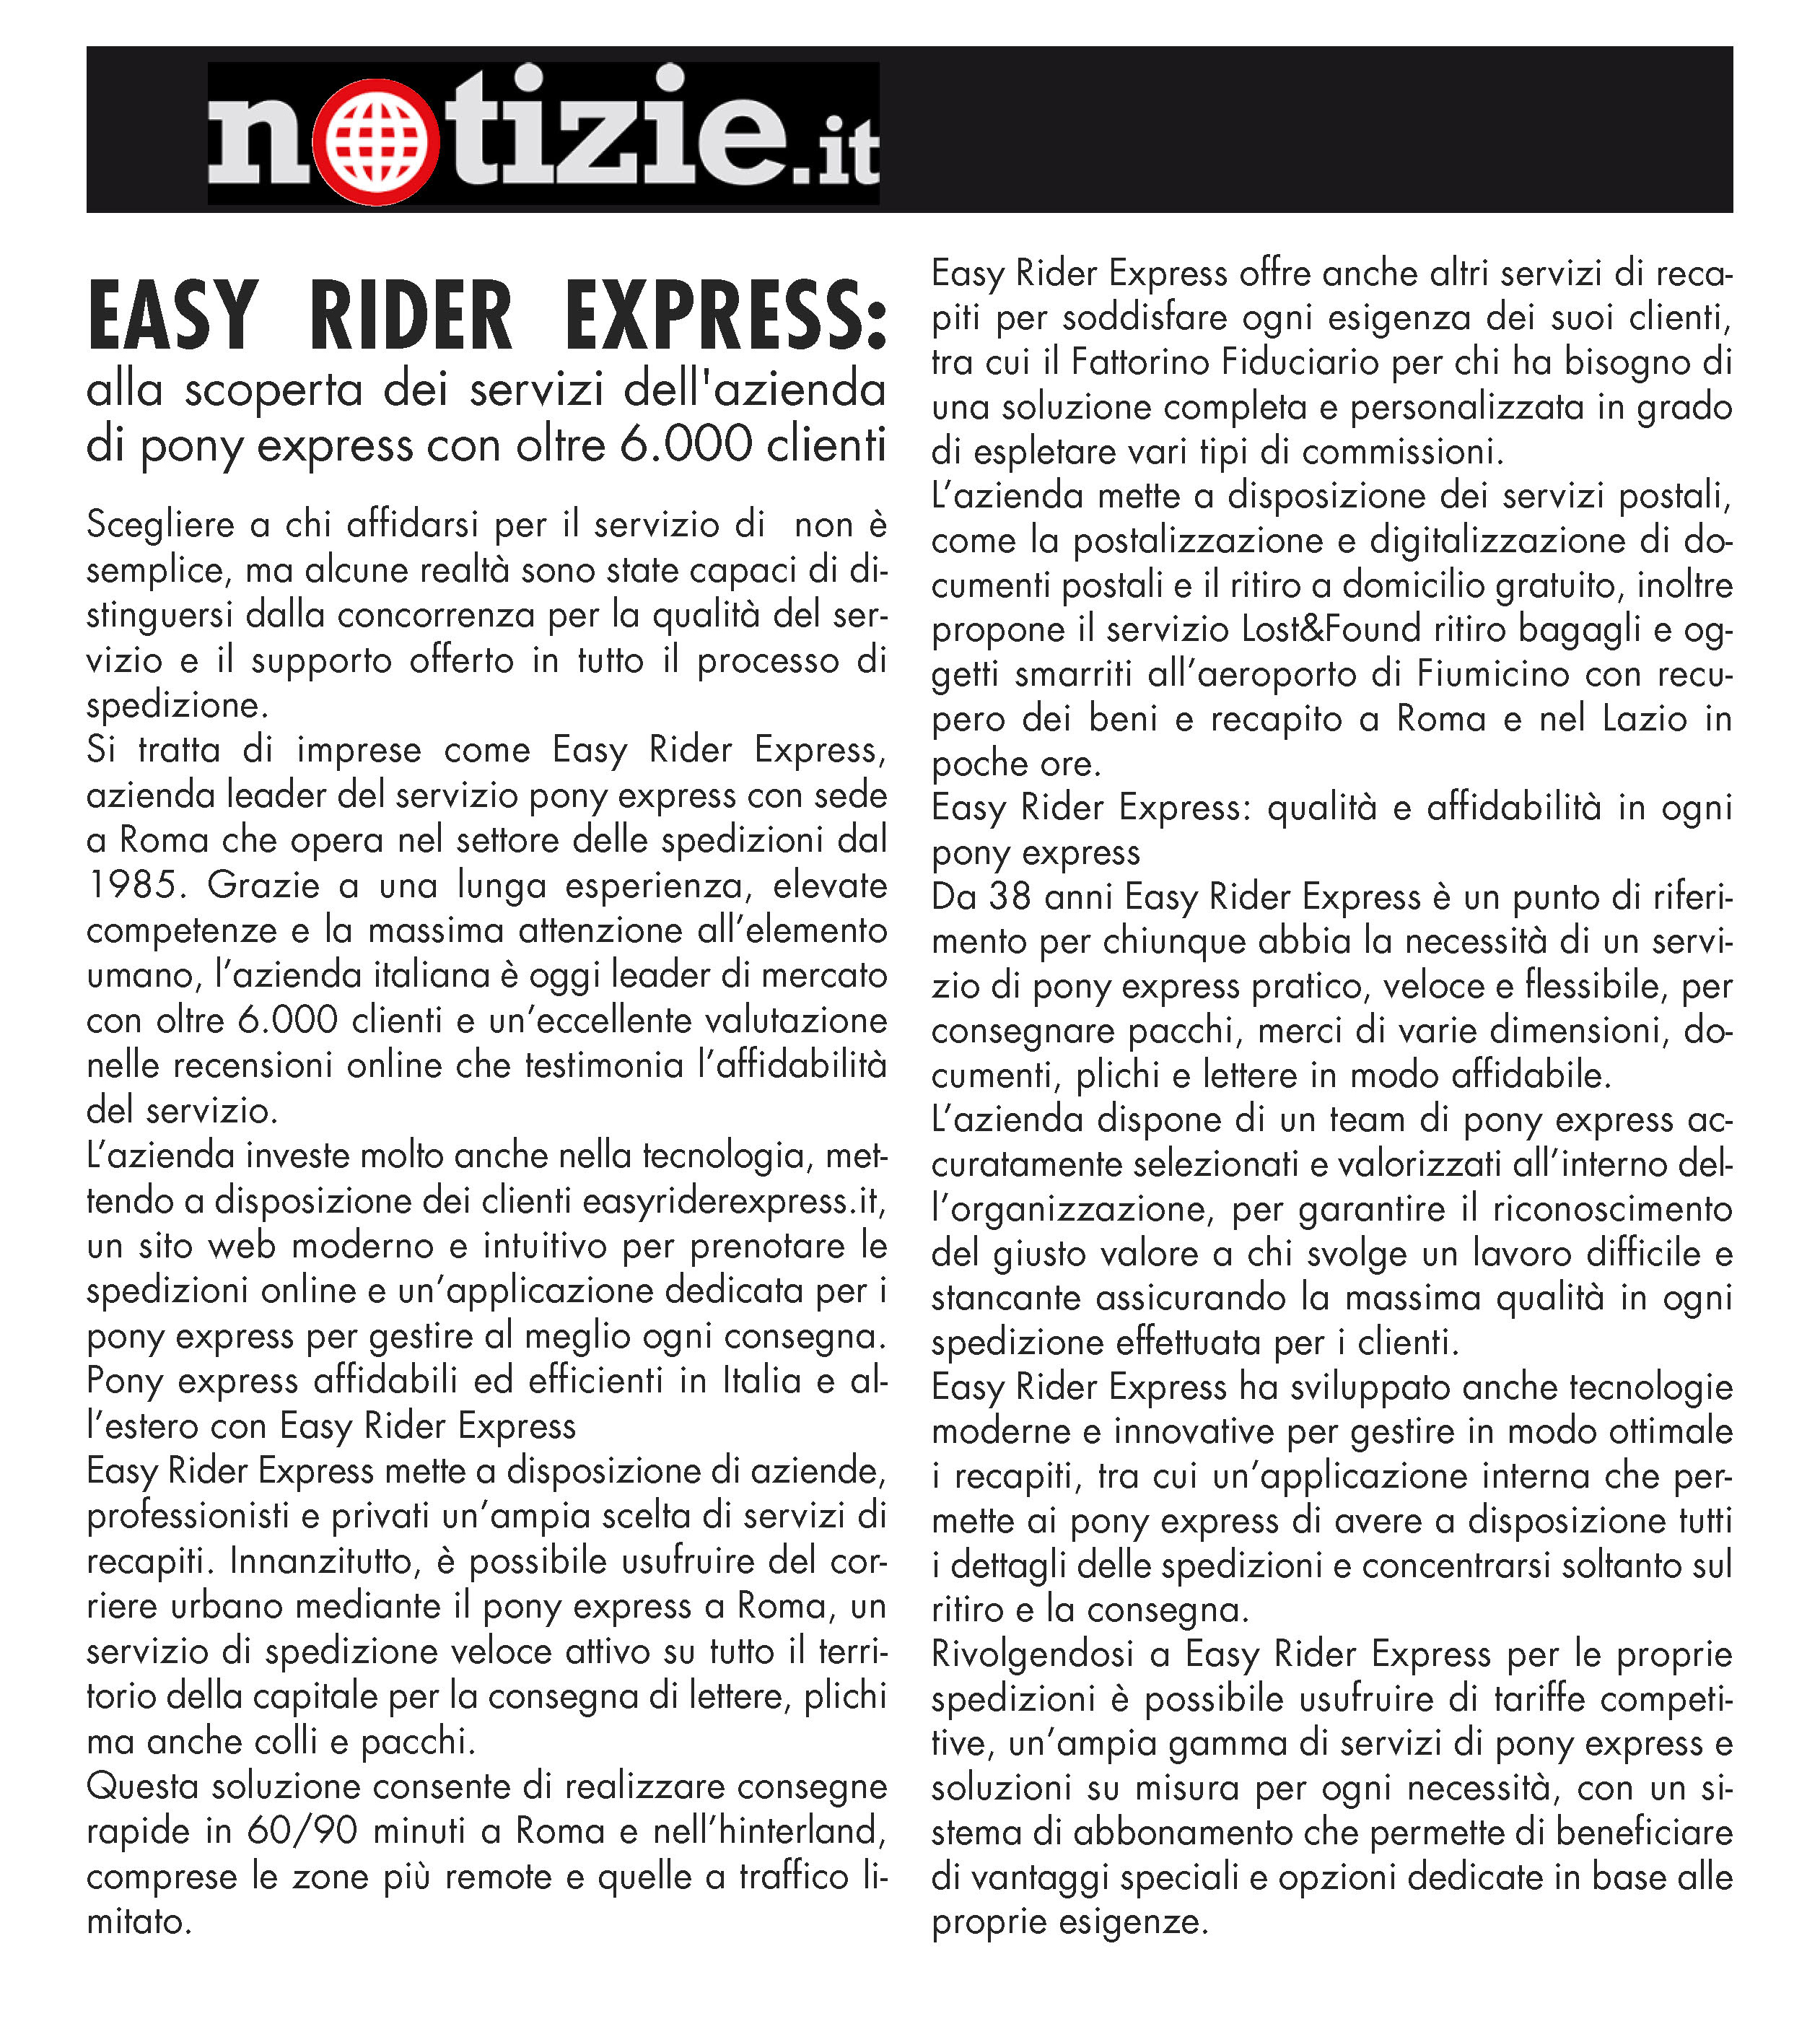 Easy Rider Express: alla scoperta dei servizi dell'azienda di pony express con oltre 6.000 clienti